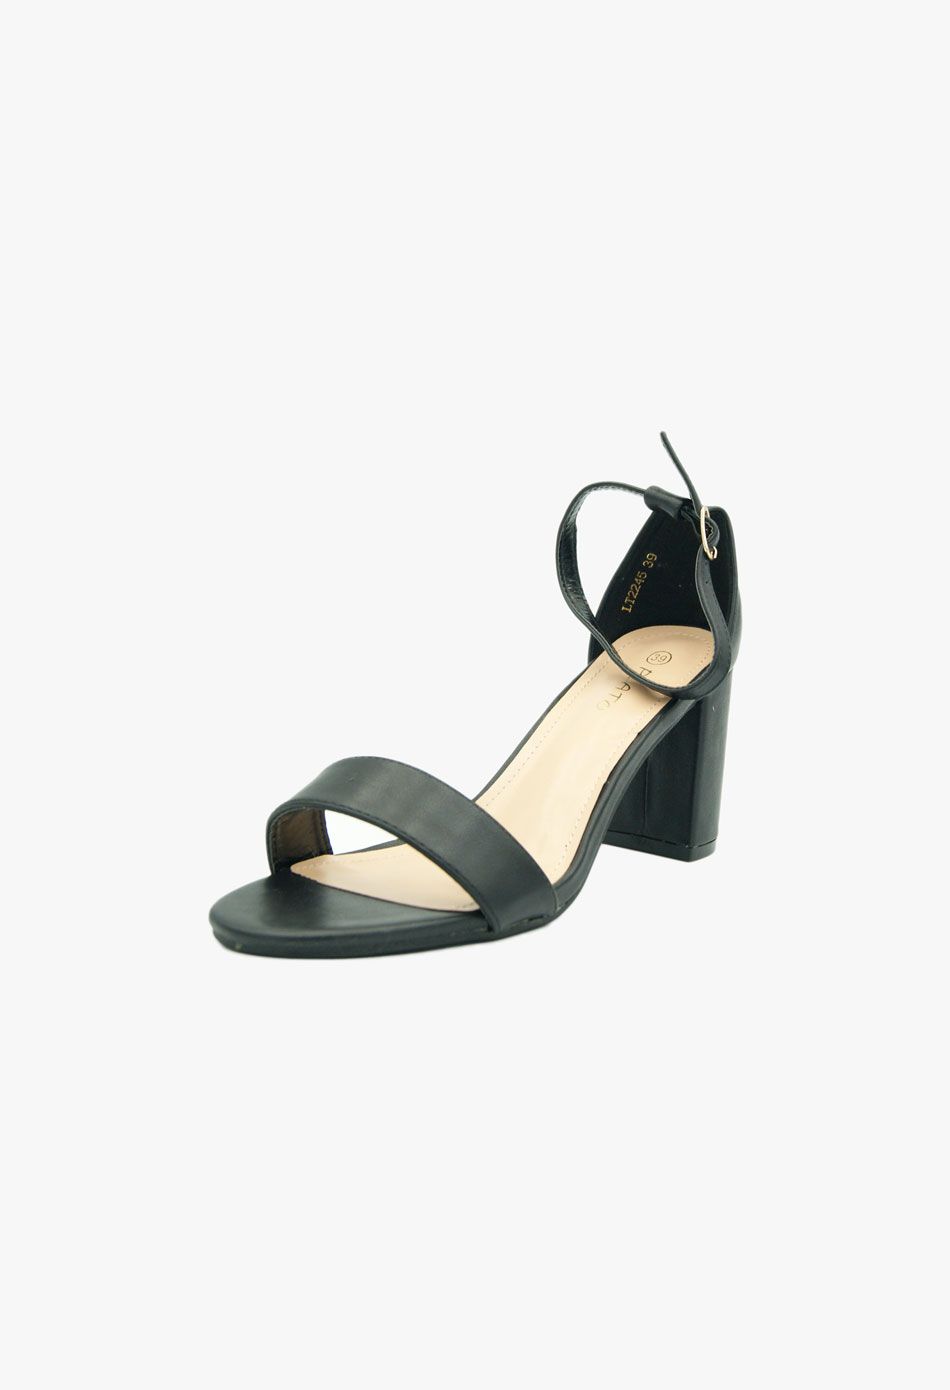 Πέδιλα με χοντρό χαμηλο τακούνι μαύρο / LT2245-black Ανοιχτά Παπούτσια joya.gr